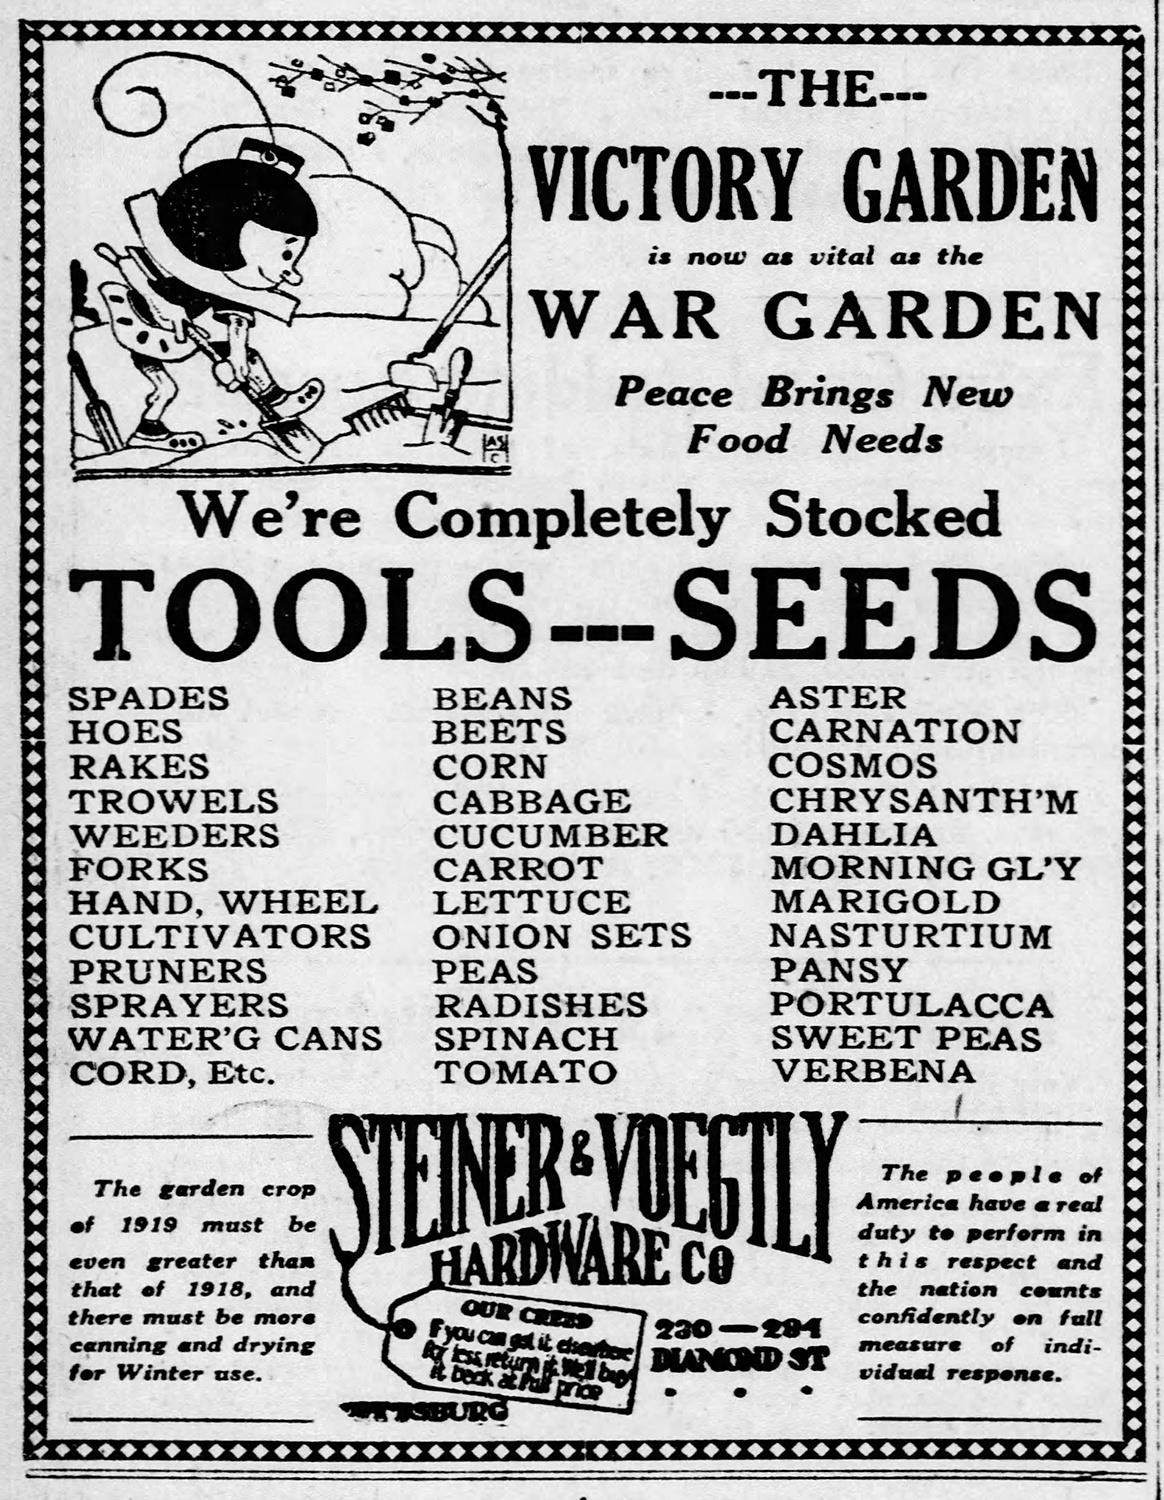 organic kitchen herb gardening kit